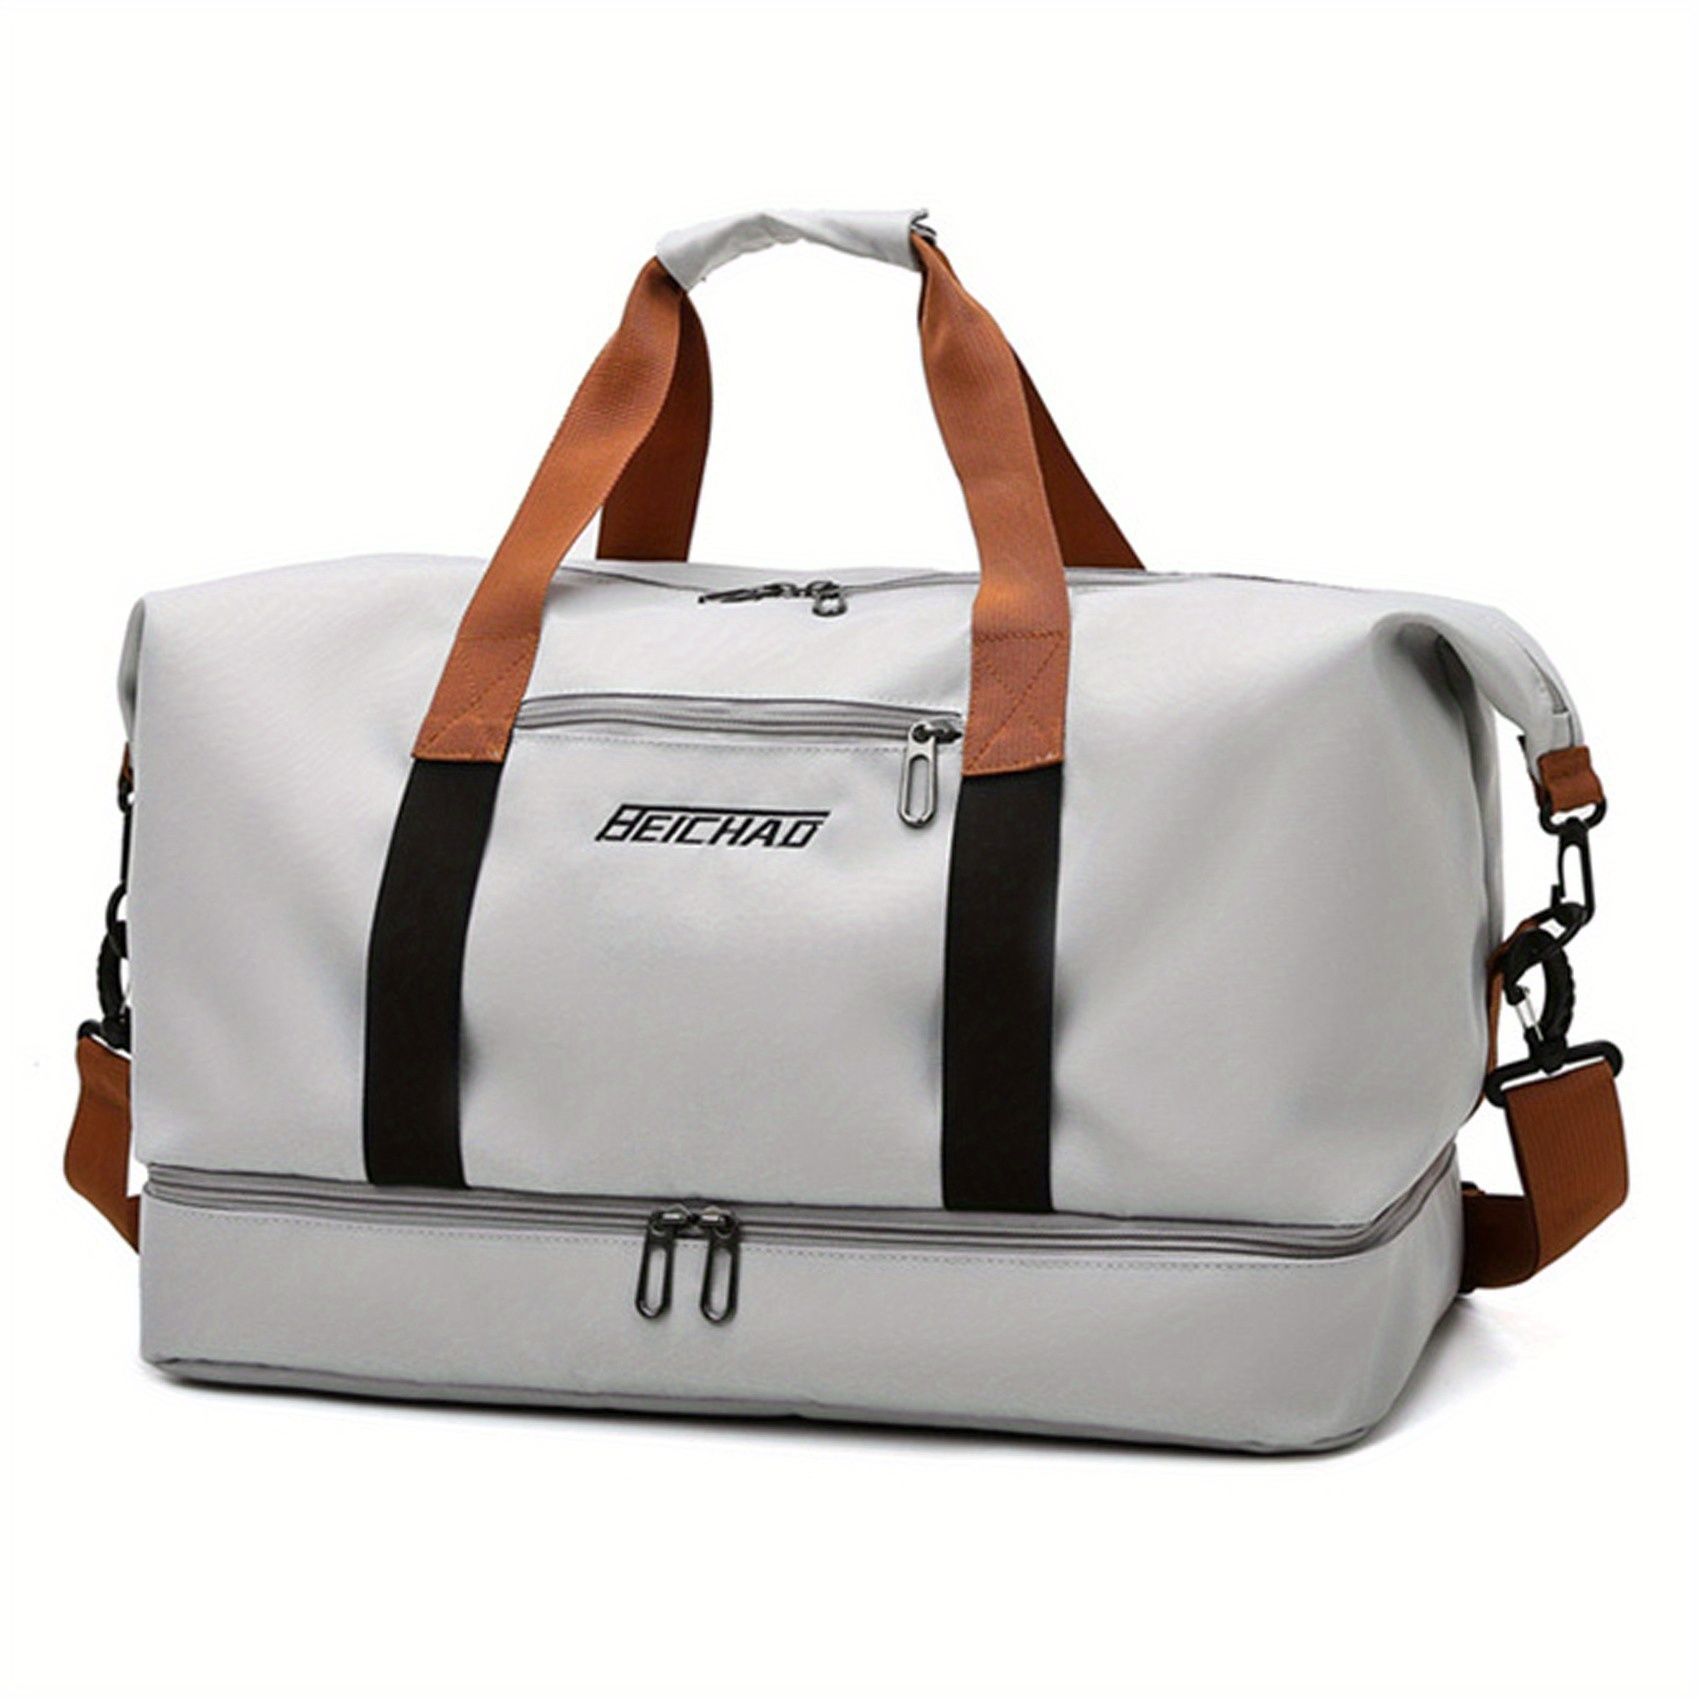 Short-Haul Travel Bag Woman Portable Bag Handbag Fitness Bag Portable  Luggage Bag